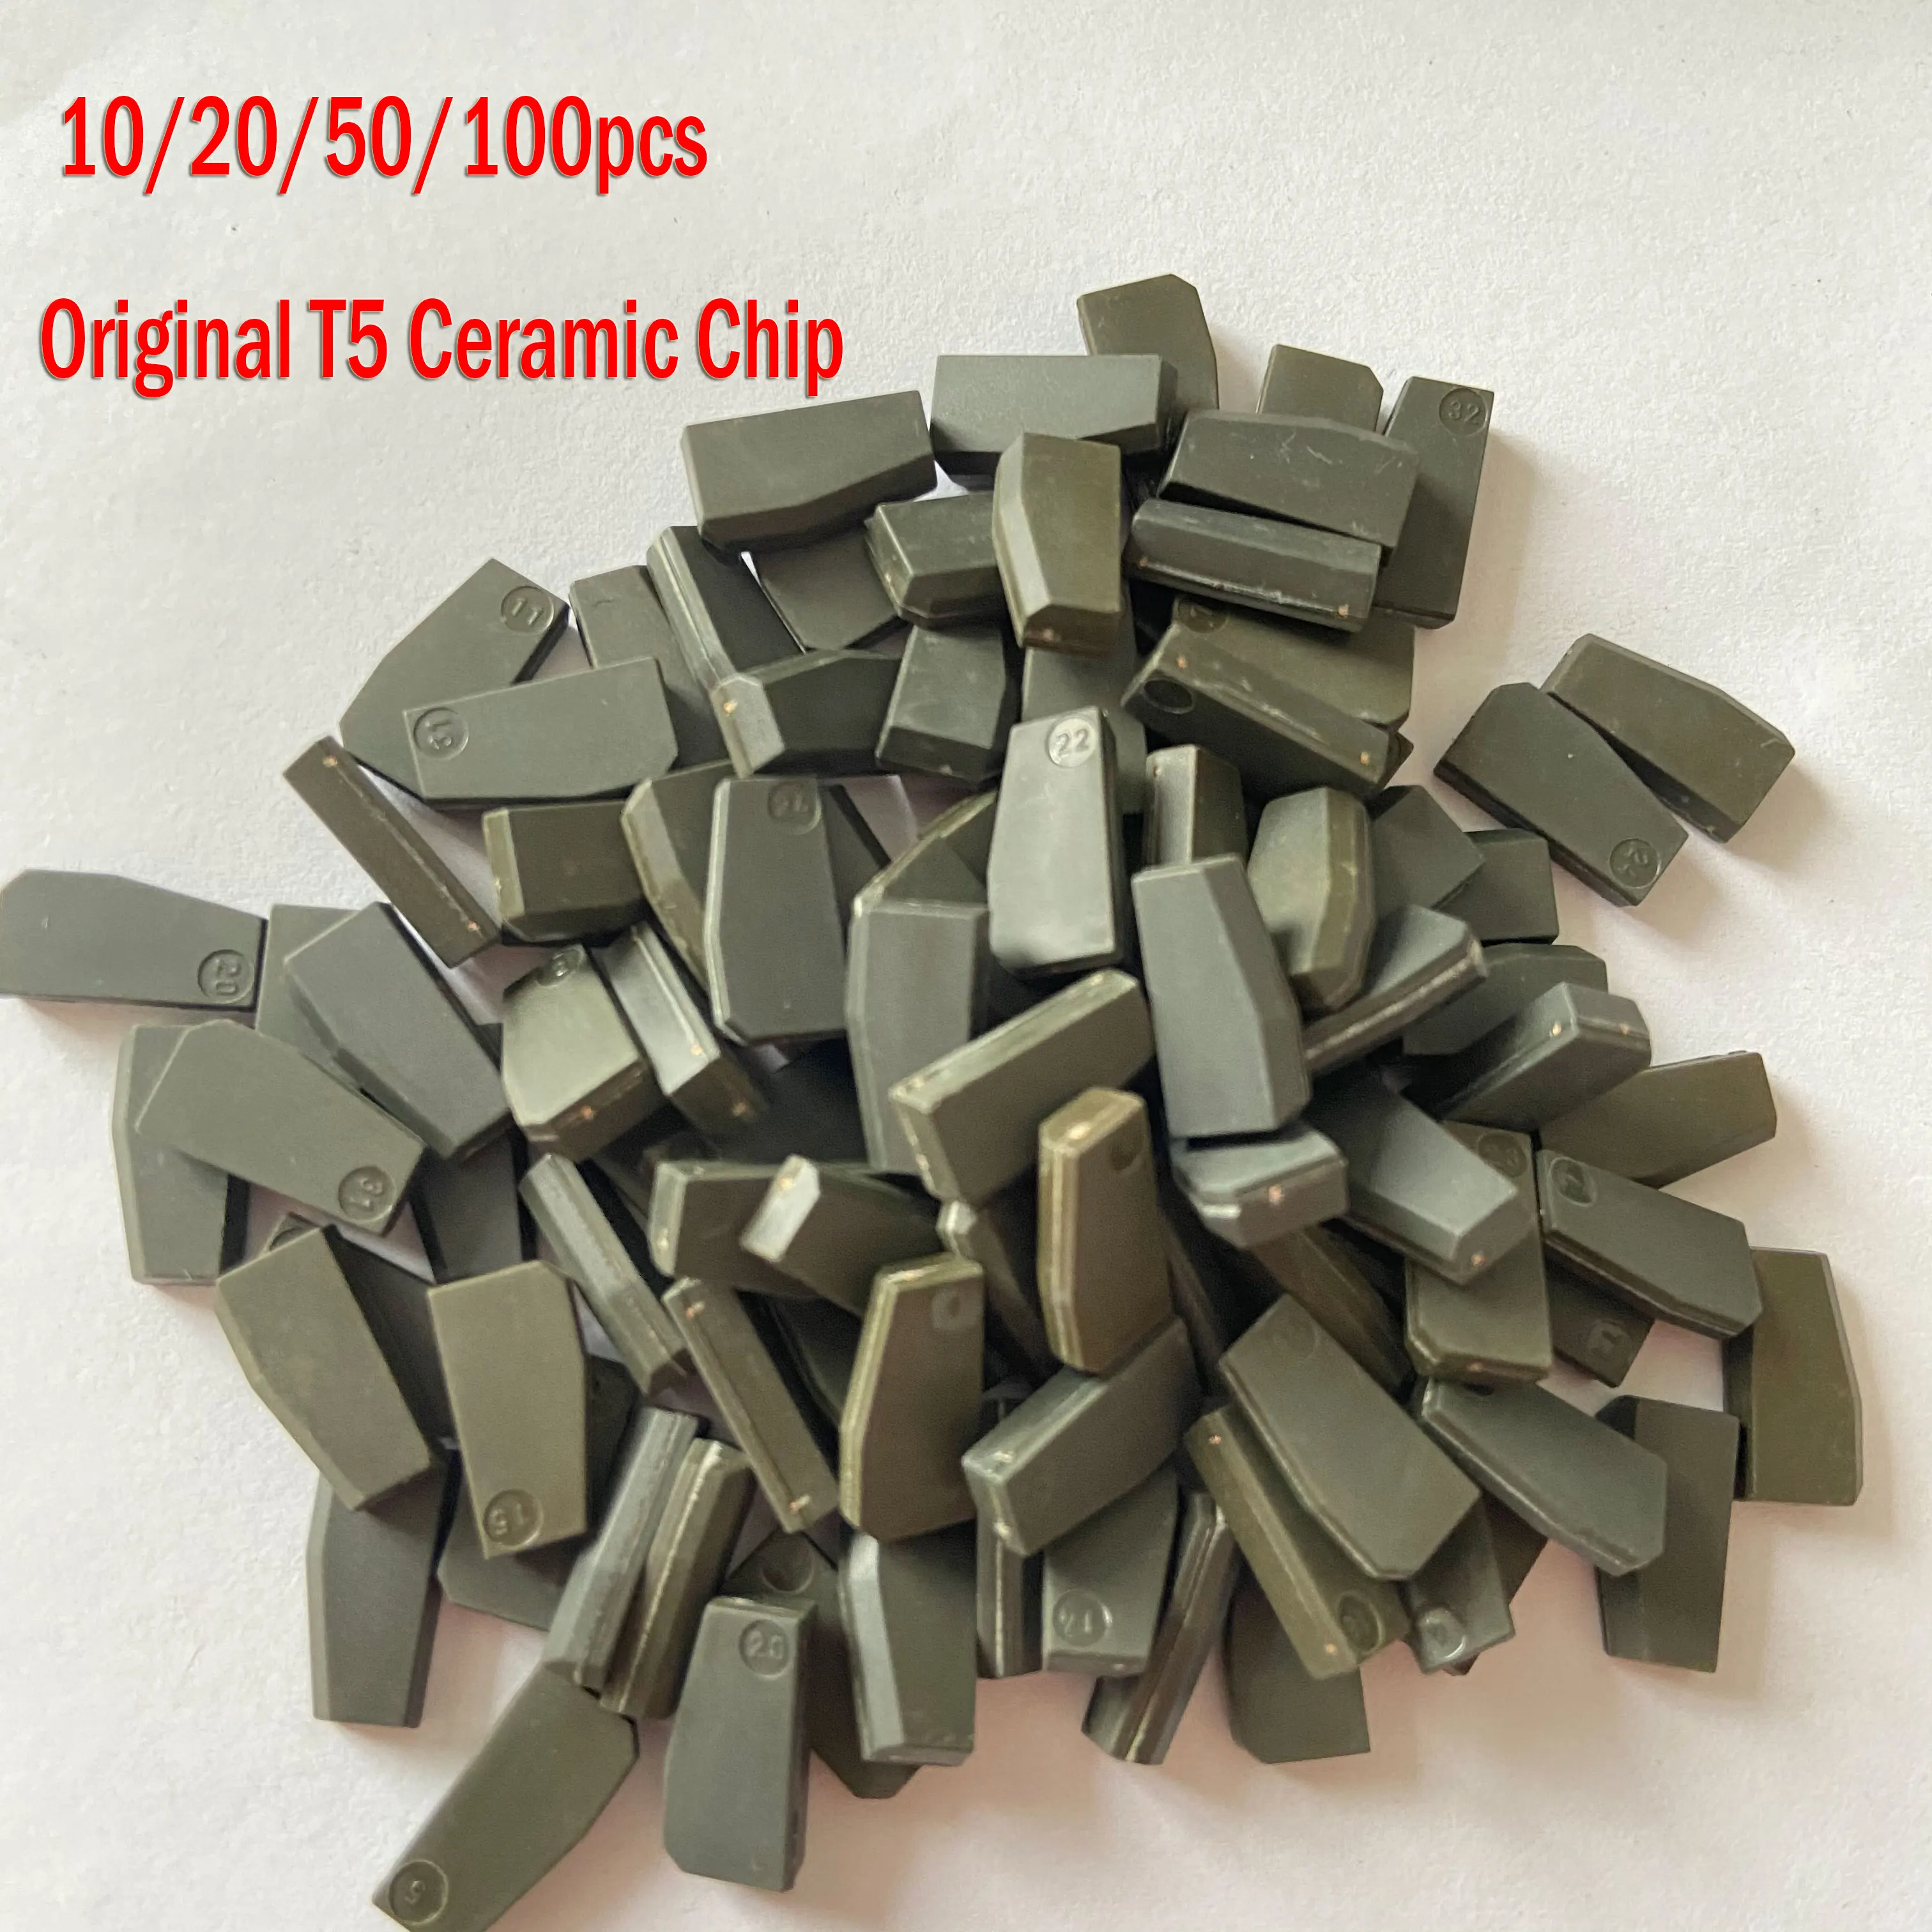 

10/20/50/100PCS Original T5 Ceramic Chip ID20 ID 20 ID 13 T20 ID13 Transponder Chip Car Key Chip